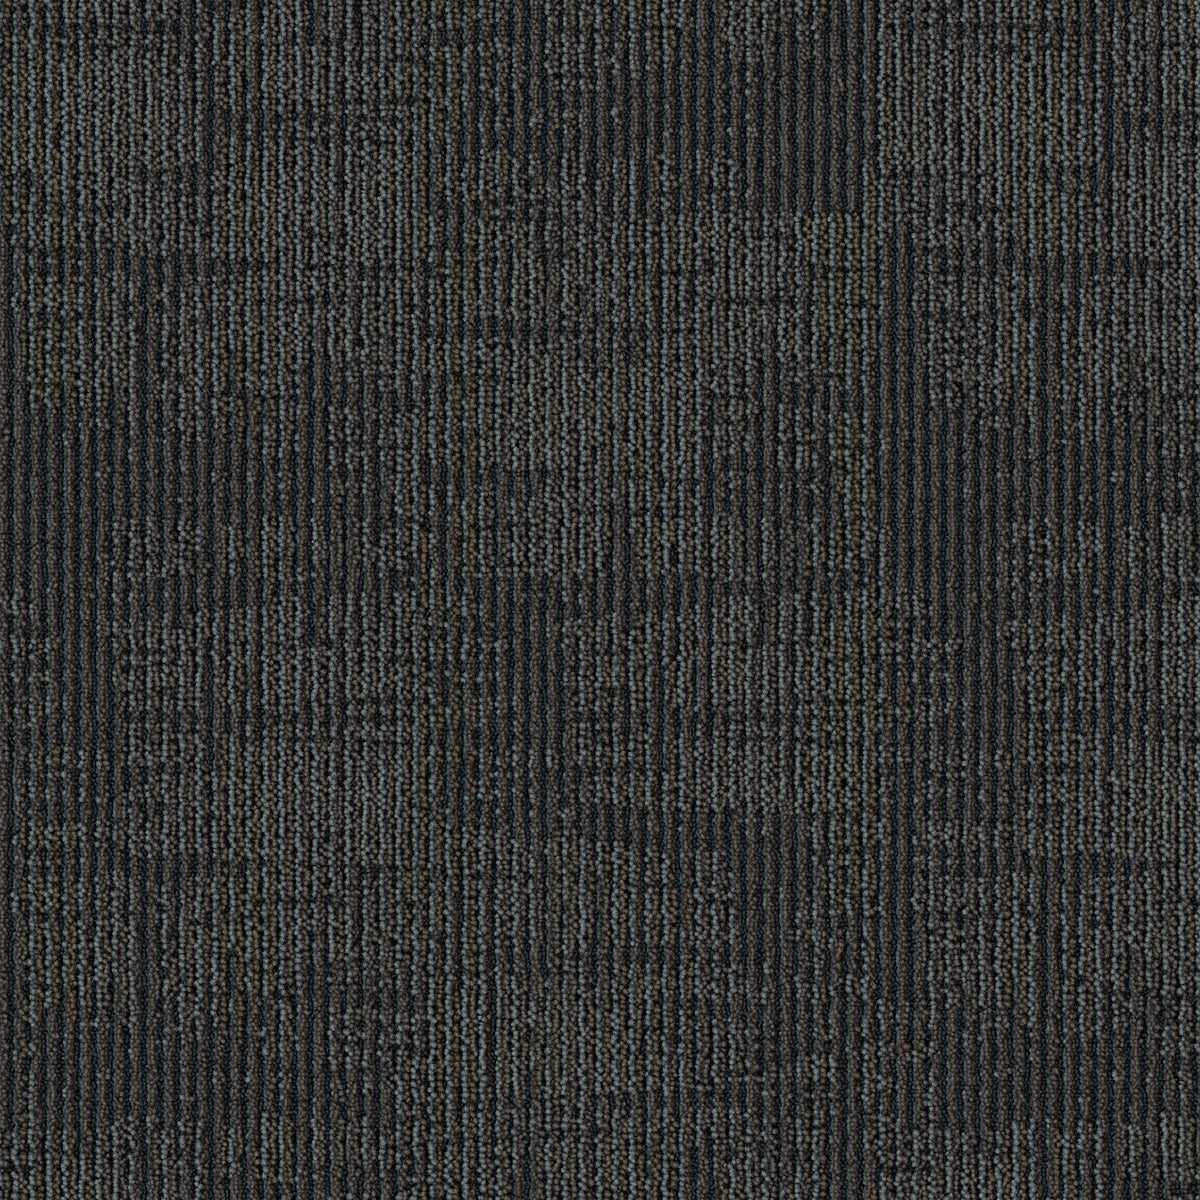 Mohawk Group - Artisanal - Threaded Craft - Carpet Tile - Dusk